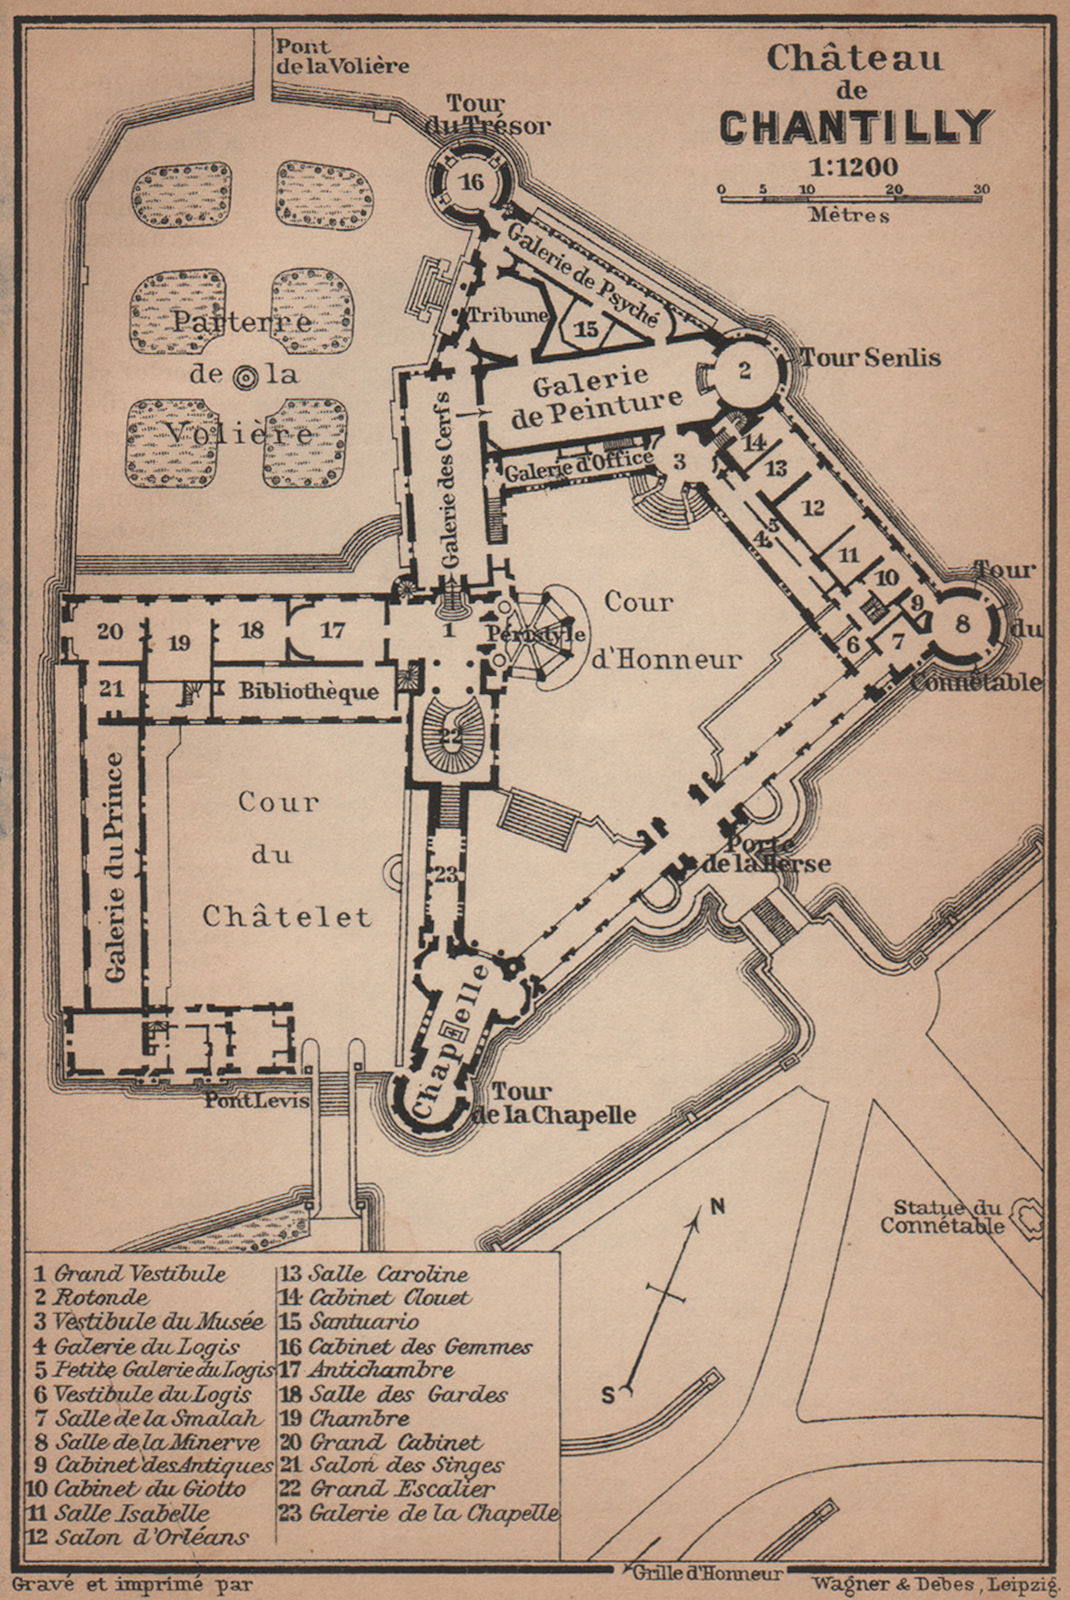 Associate Product CHÂTEAU DE CHANTILLY floor plan. Oise carte. BAEDEKER 1900 old antique map